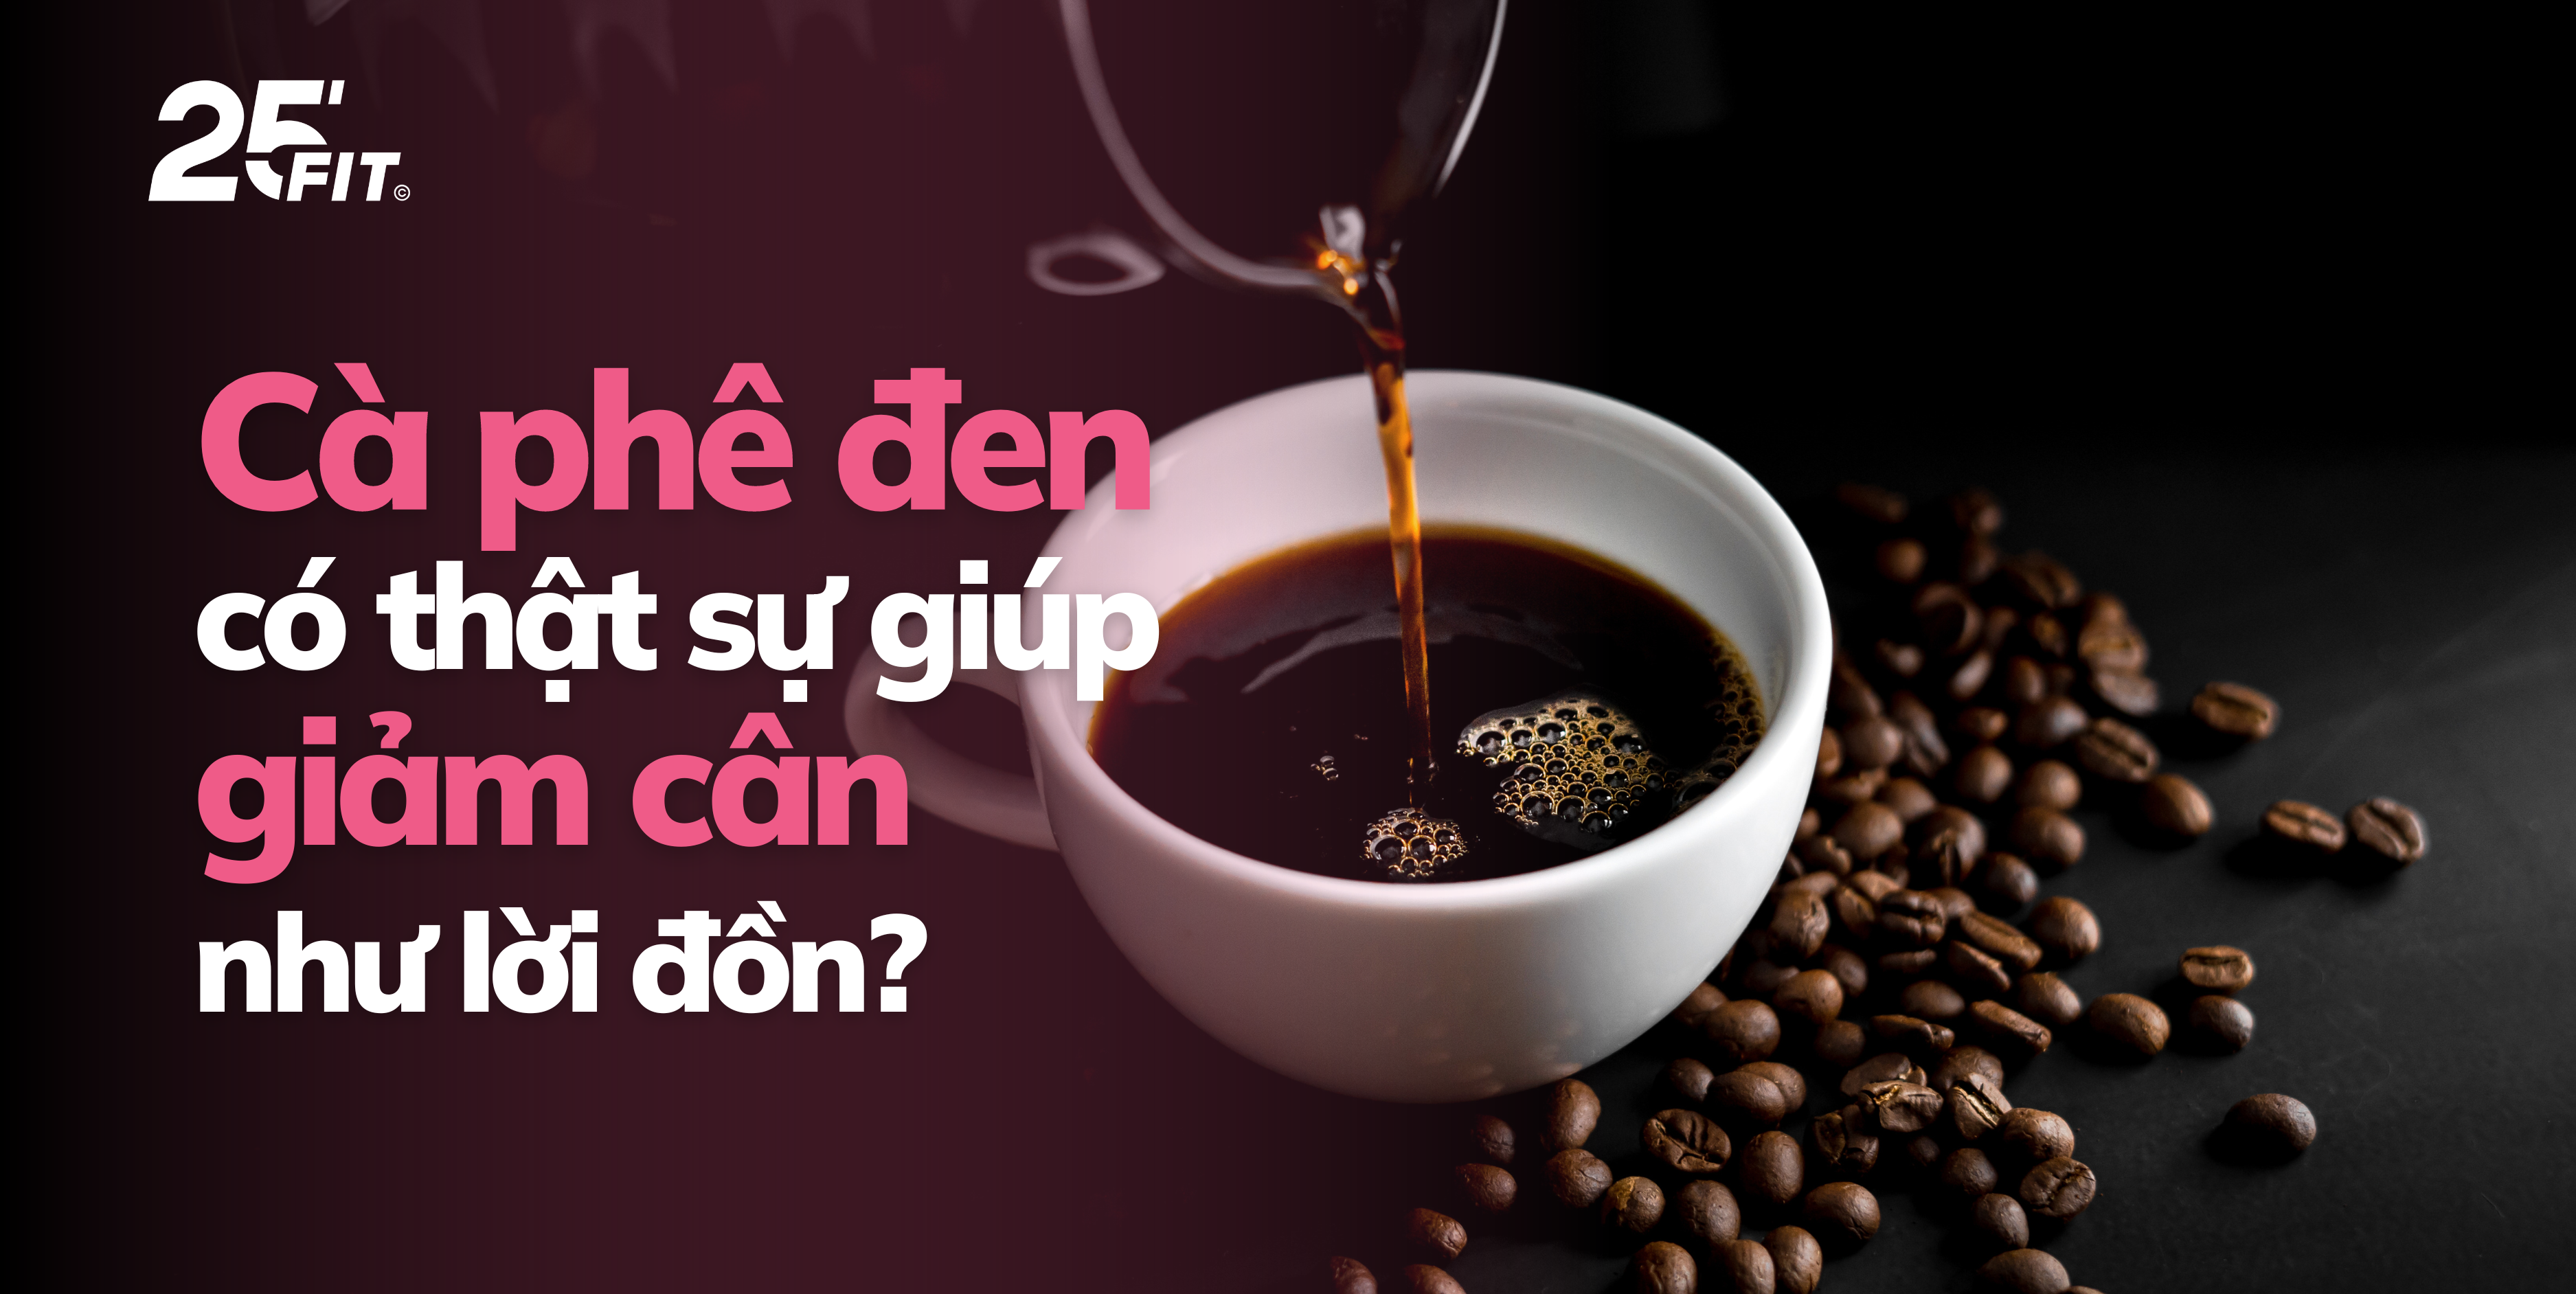 Uống cà phê đen nhiều có giúp giảm cân không?